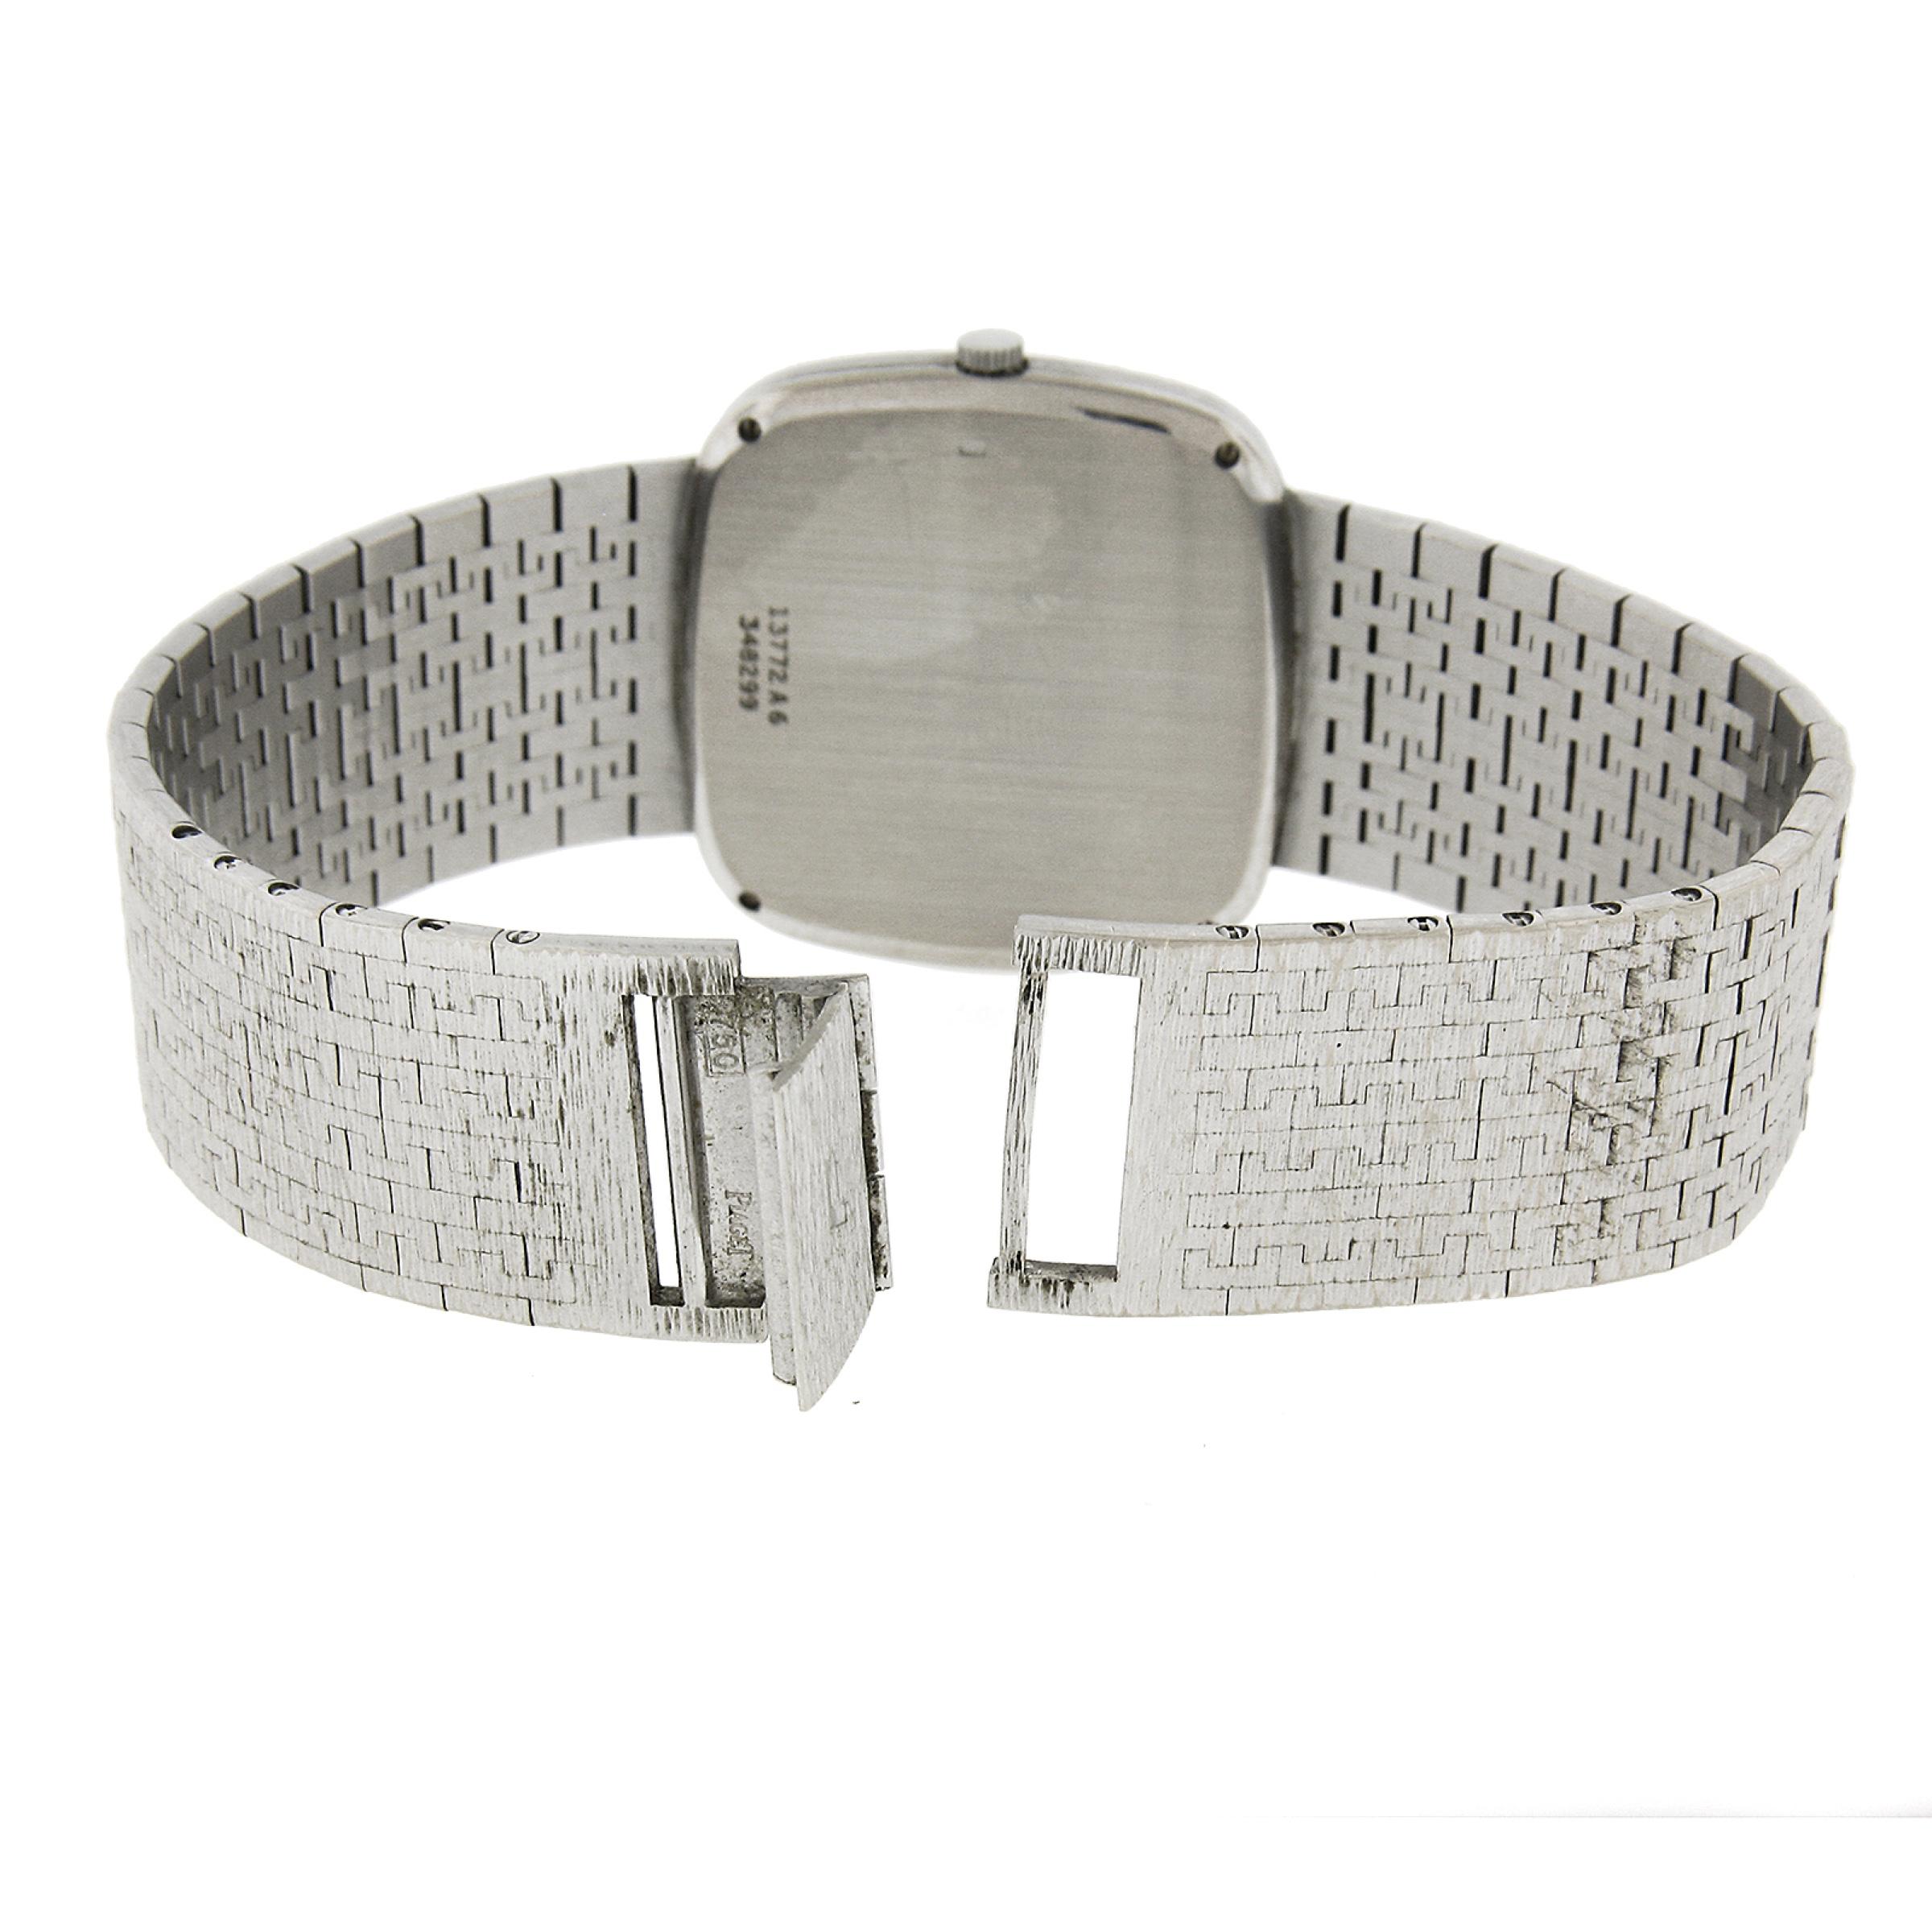 Vintage Piaget Automatic 18k Gold 32mm Cushion Texture Link Bracelet Wrist Watch 2